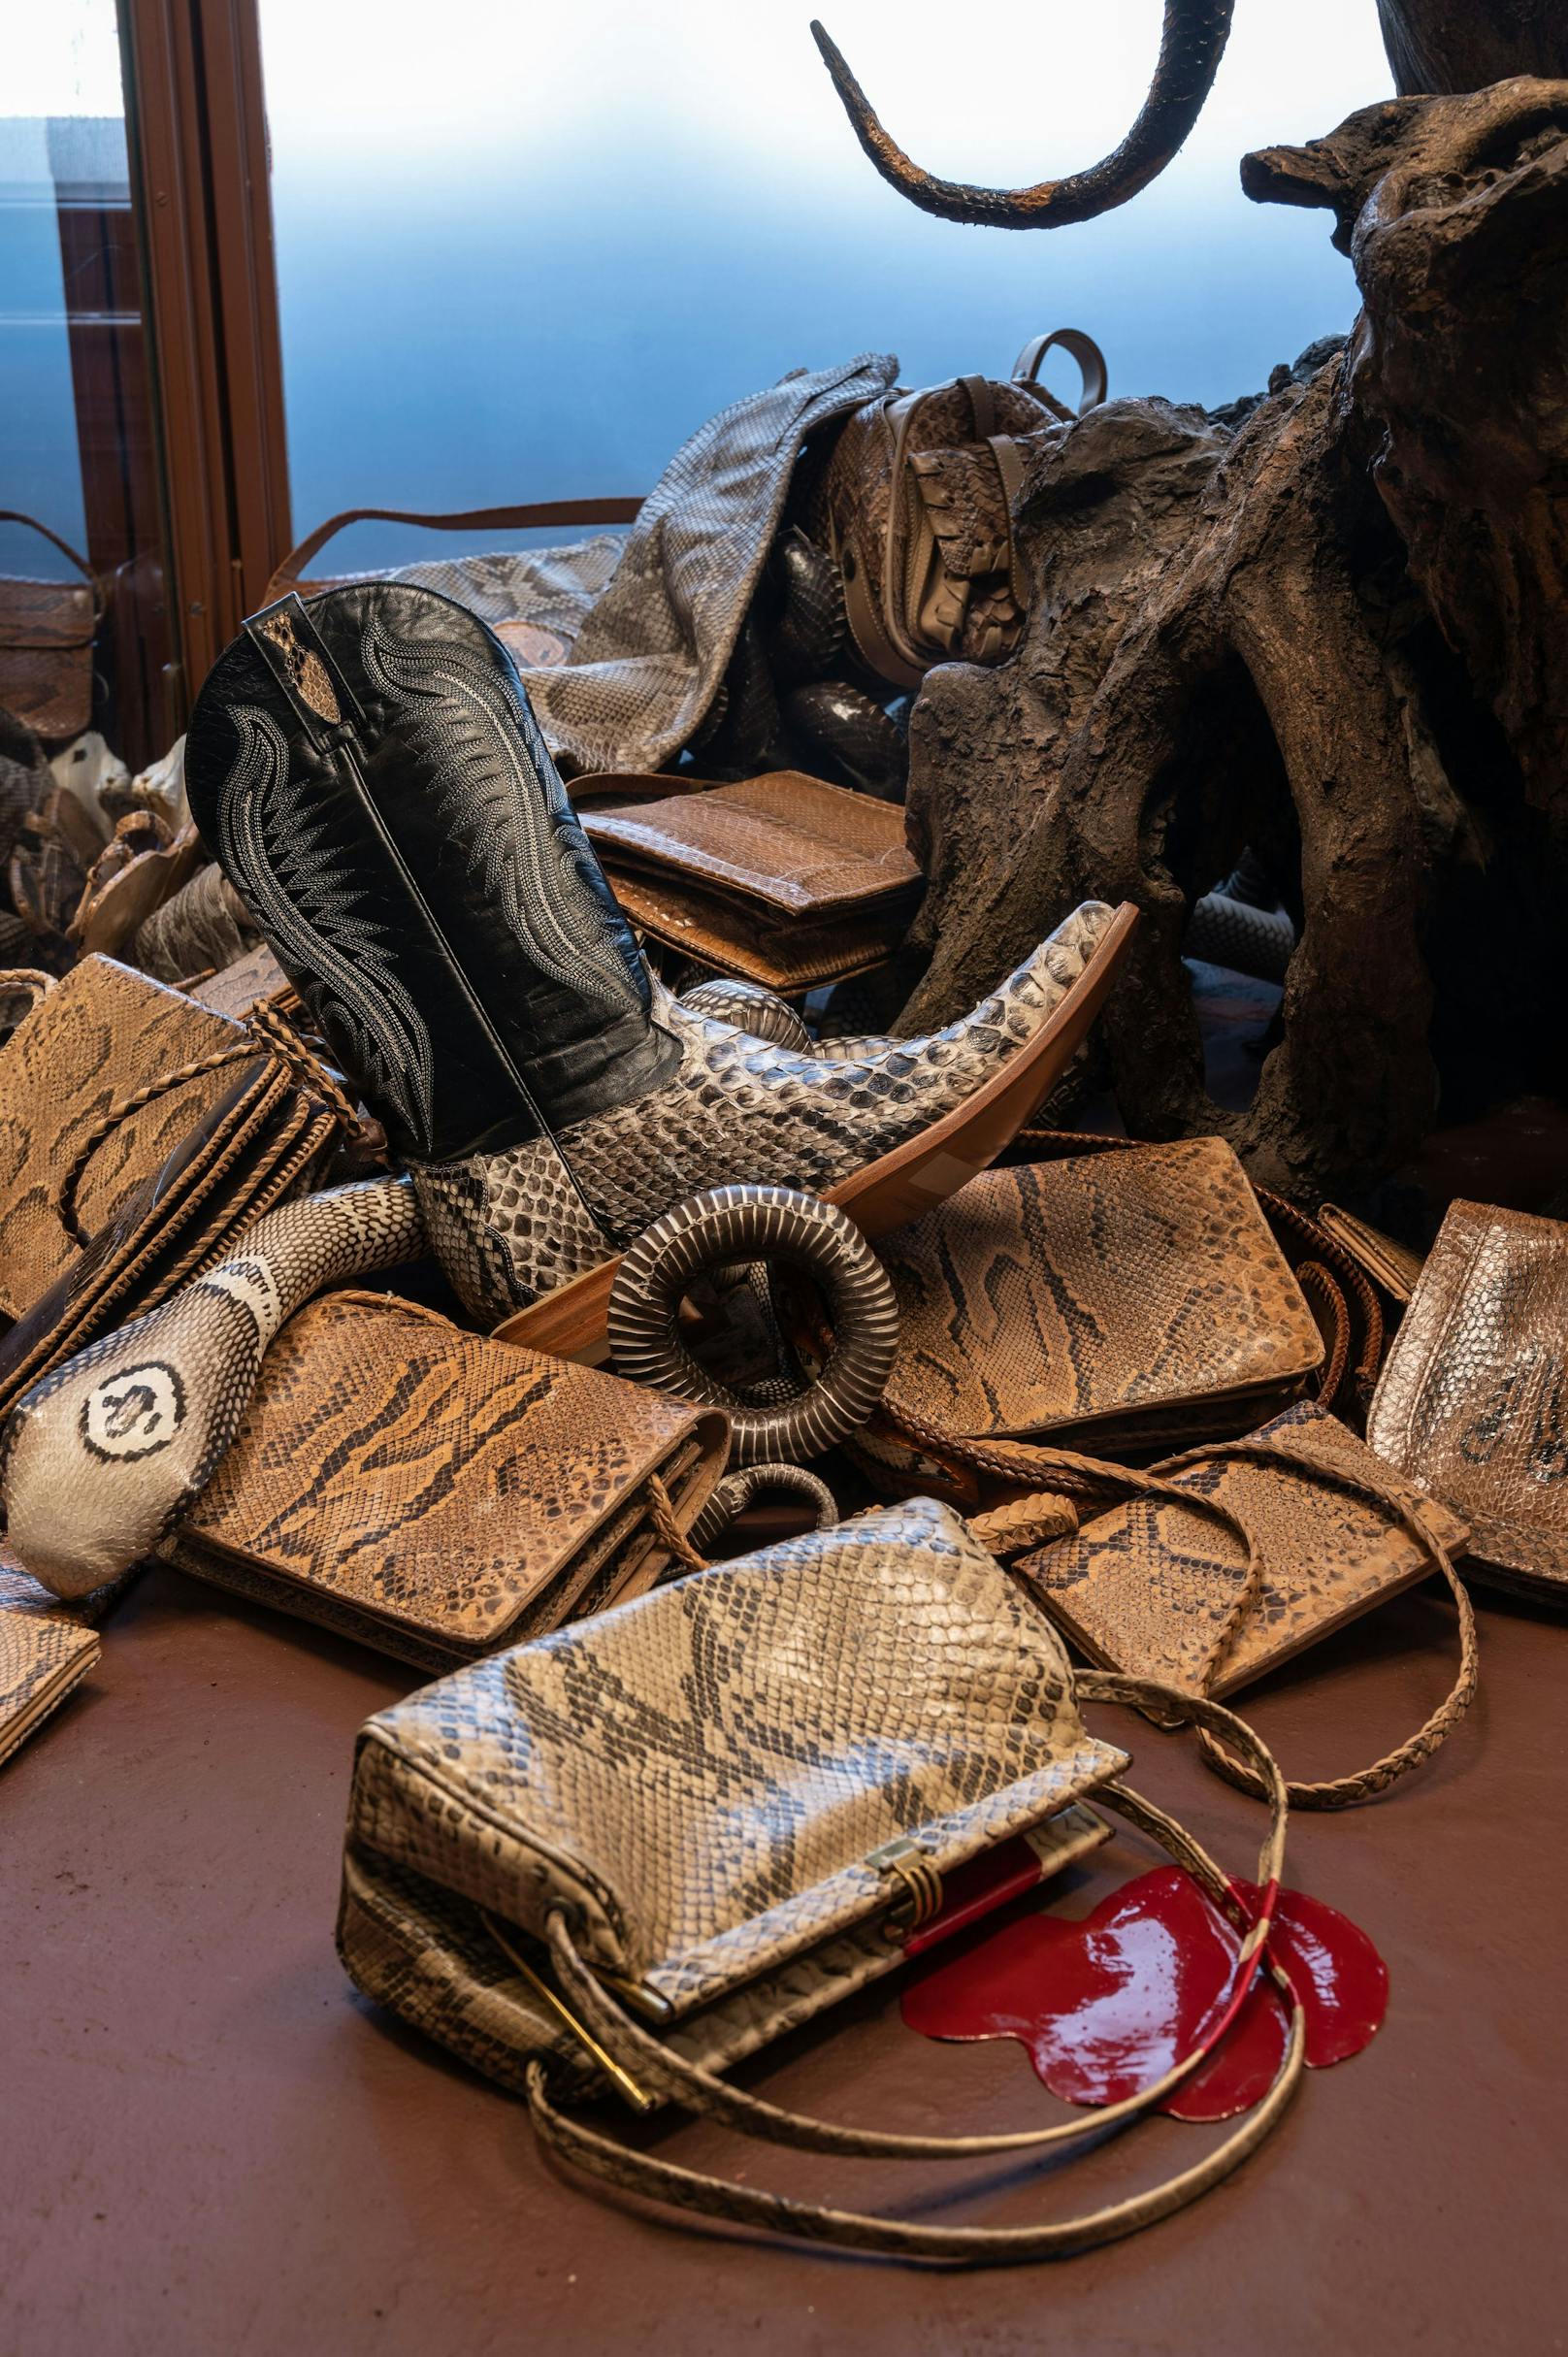 Das Naturhistorische Museum Wien widmet dem Thema nun eine Sondervitrine. Darin sind (sobald es Corona zulässt) typische Ledererzeugnisse wie Taschen, Börsen und Schuhe zu sehen.